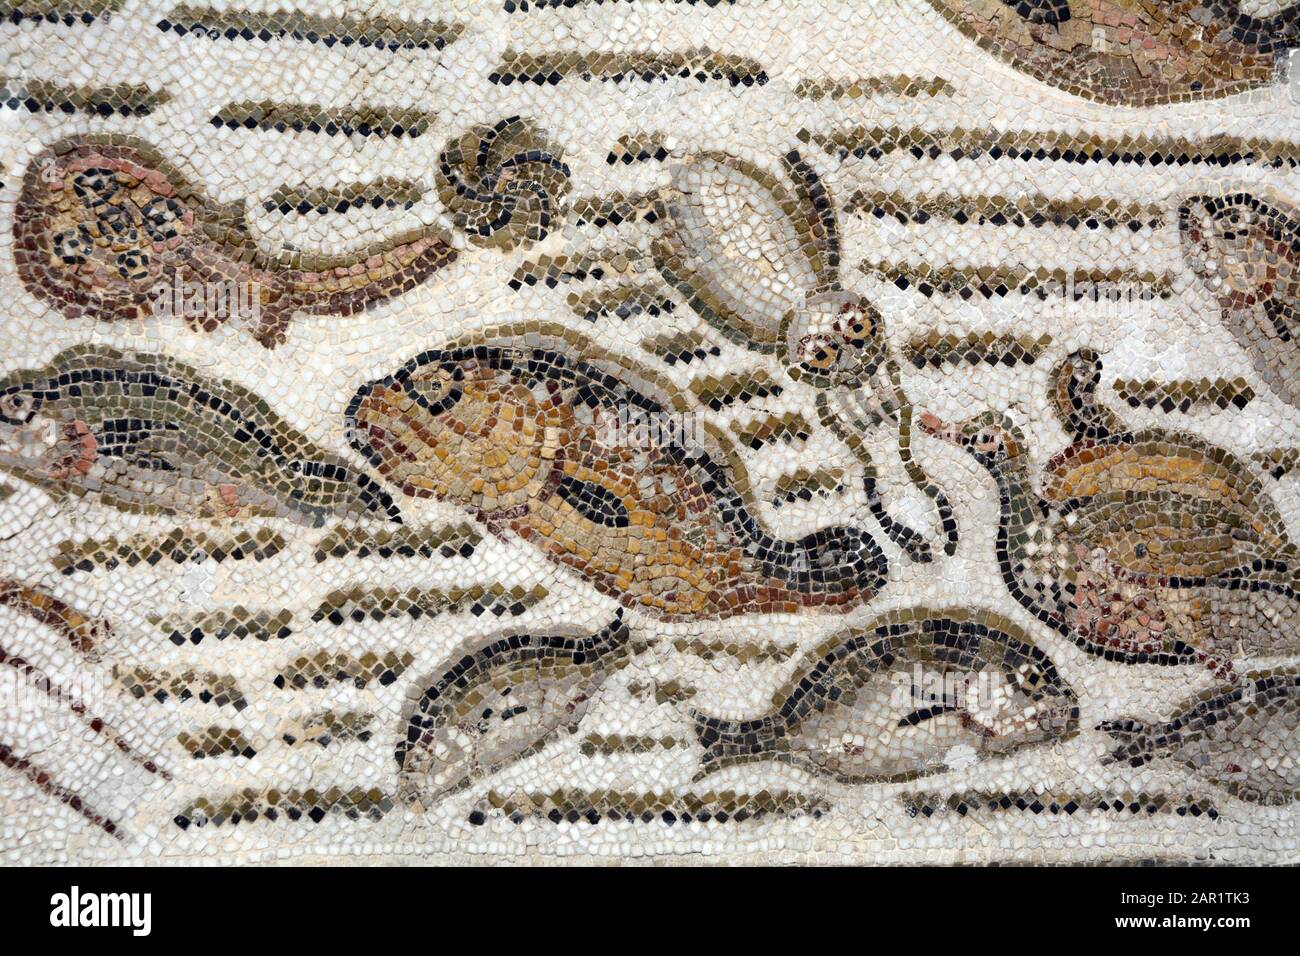 Un antico mosaico romano del 4th secolo d.C. raffigurante pesci e altre creature marine presso il Museo Nazionale del Bardo a Tunisi, Tunisia. Foto Stock